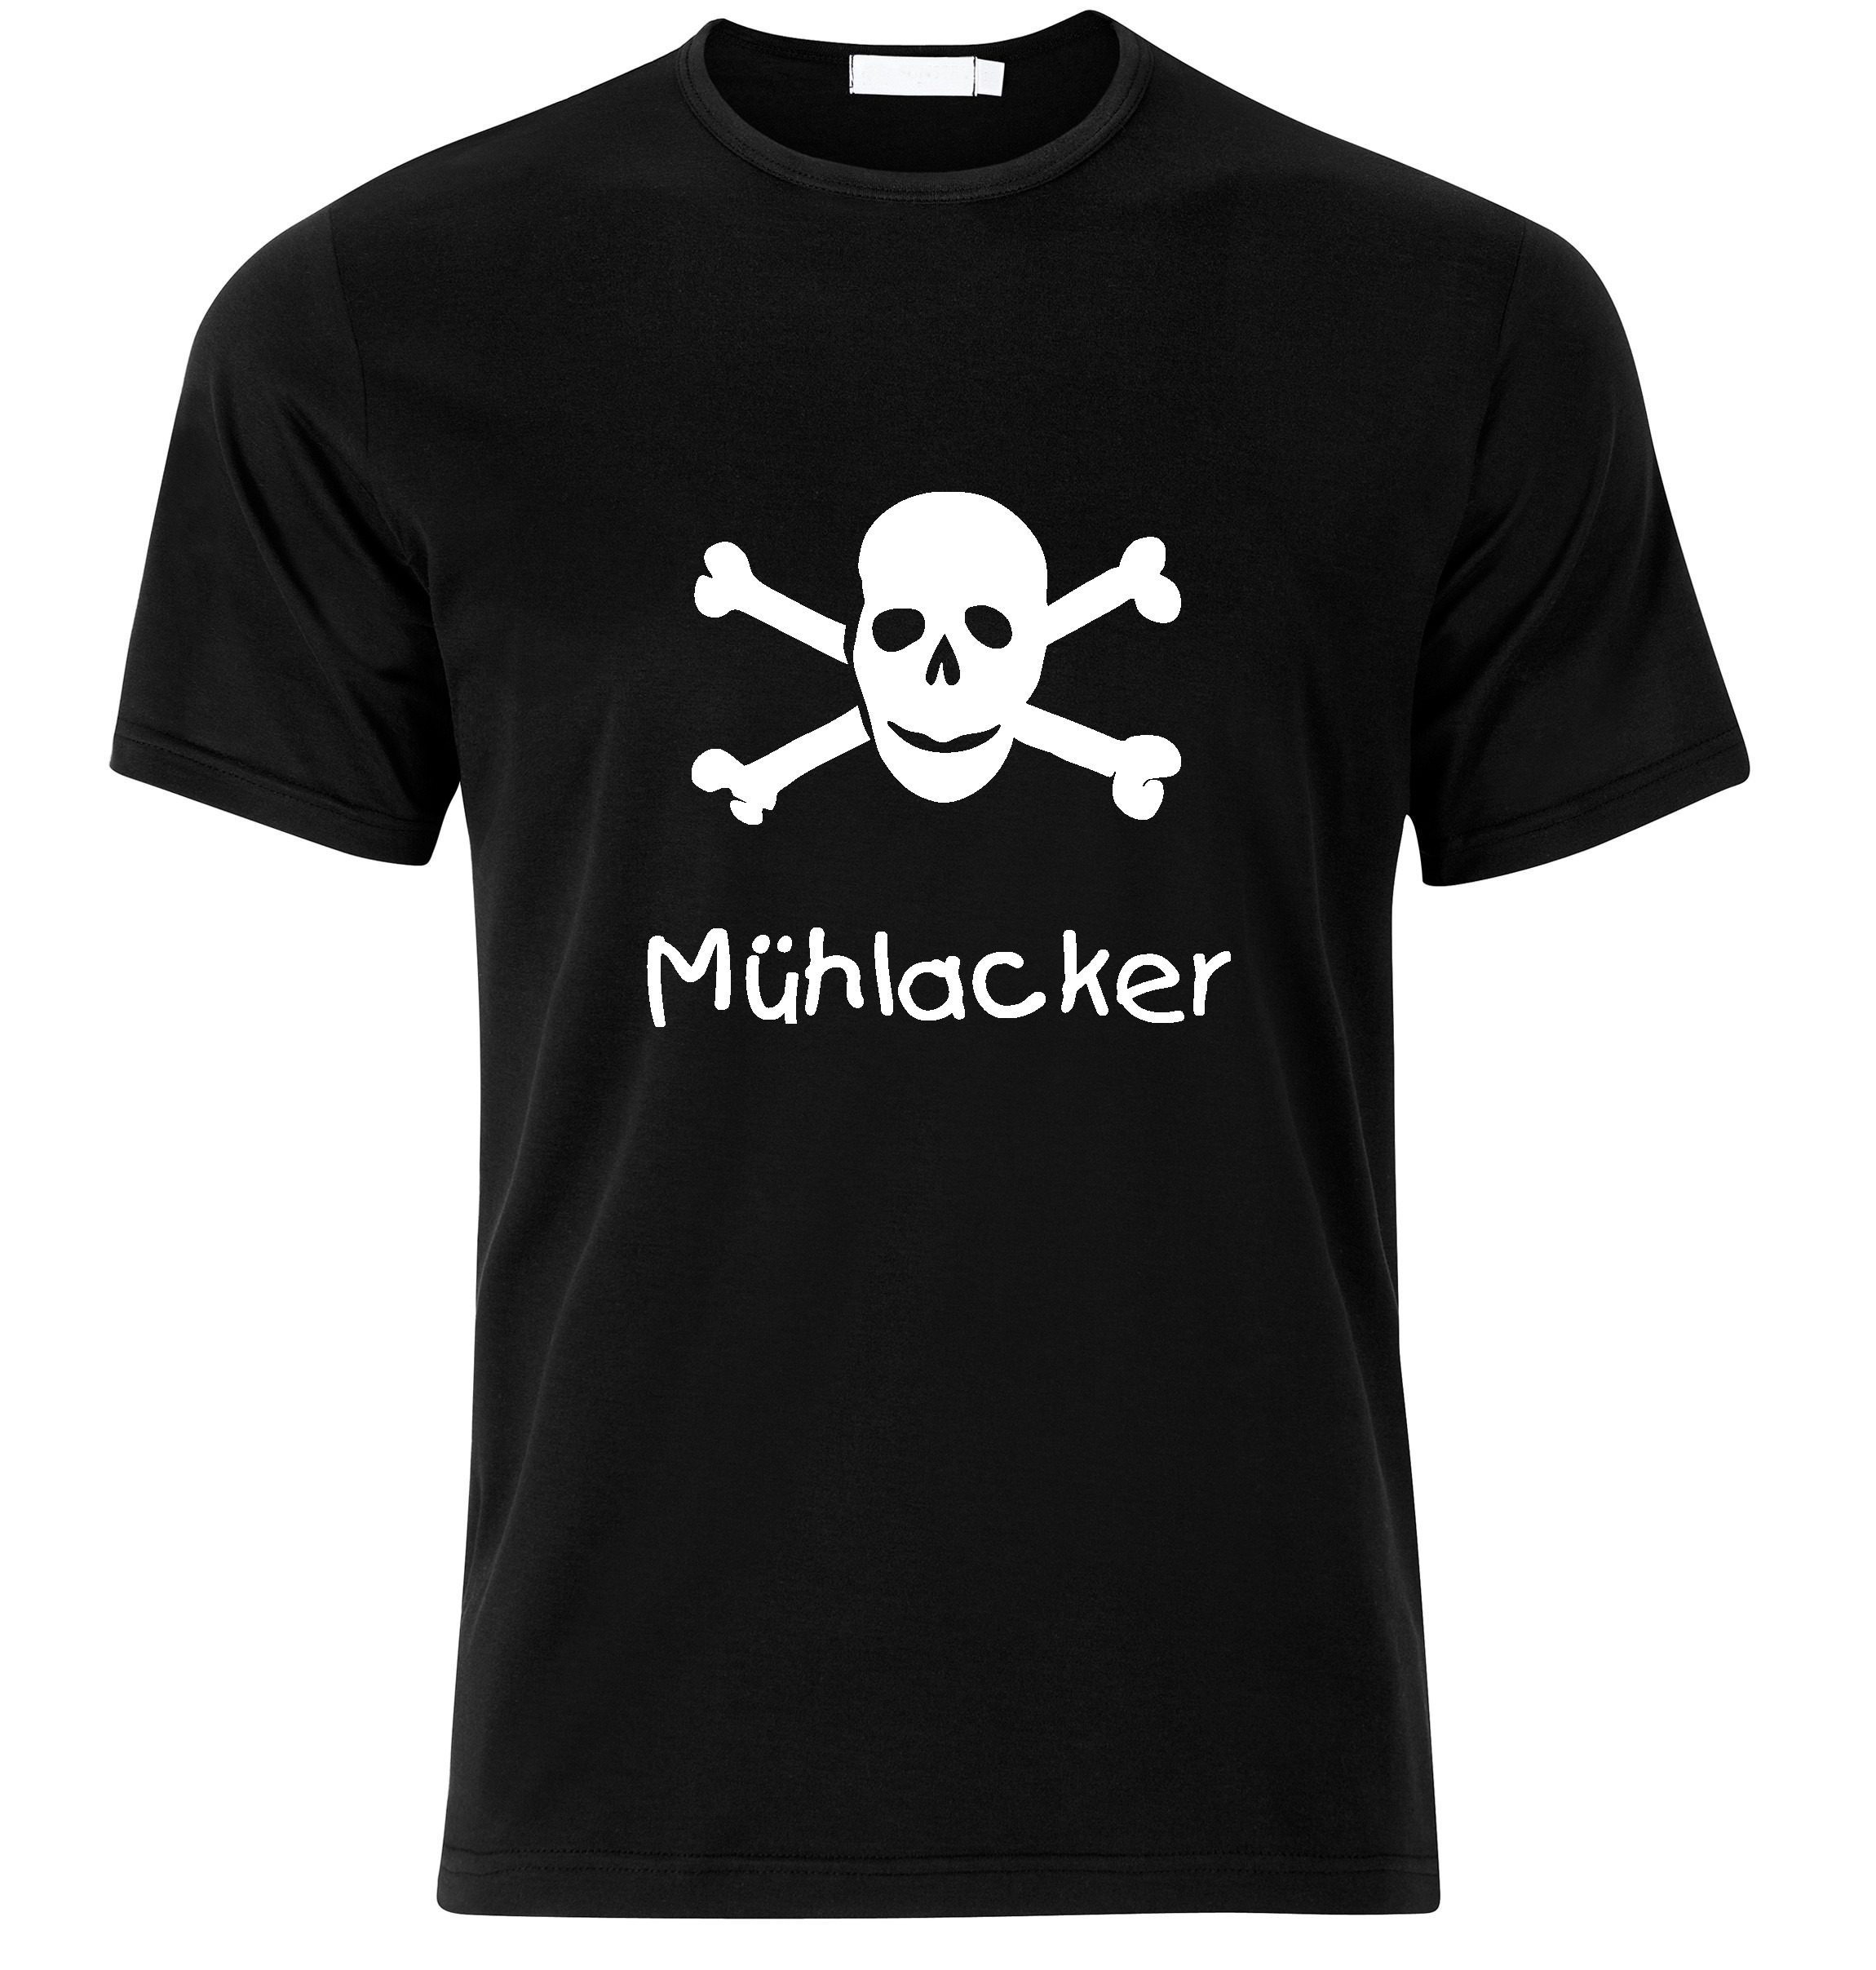 T-Shirt Mühlacker Jolly Roger, Totenkopf